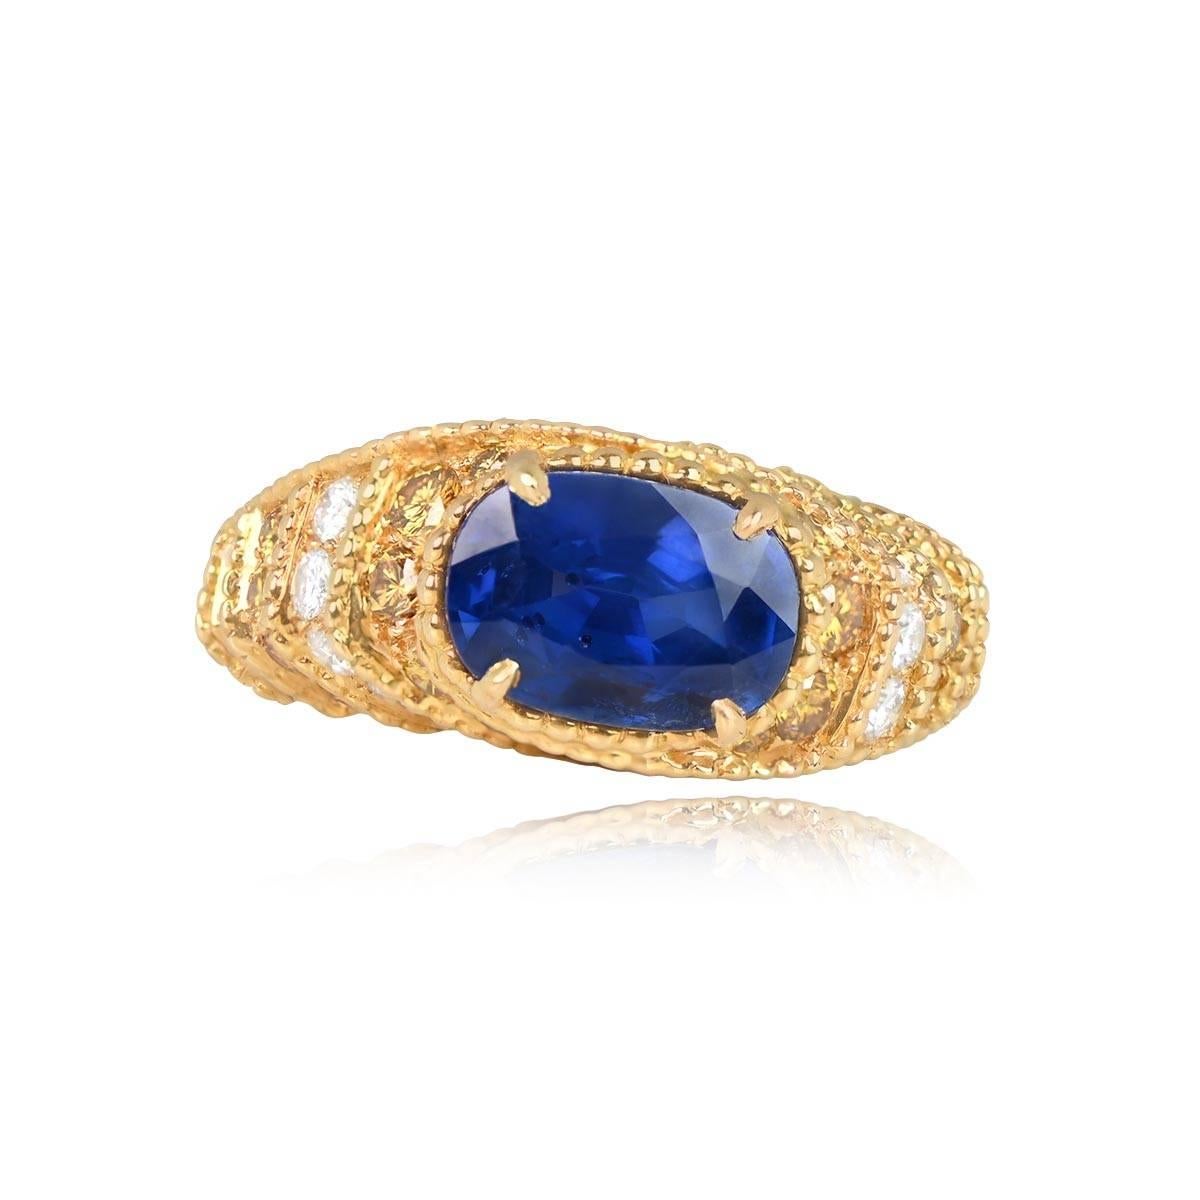 Exquisiter Ring im Vintage-Stil mit einem nicht erhitzten Saphir im Ovalschliff von 2,70 Karat in der Mitte, der mit einer feinen Zacke gefasst ist. Der Saphir ist von abwechselnden Reihen gelber und weißer Diamanten umgeben, die mit einer feinen